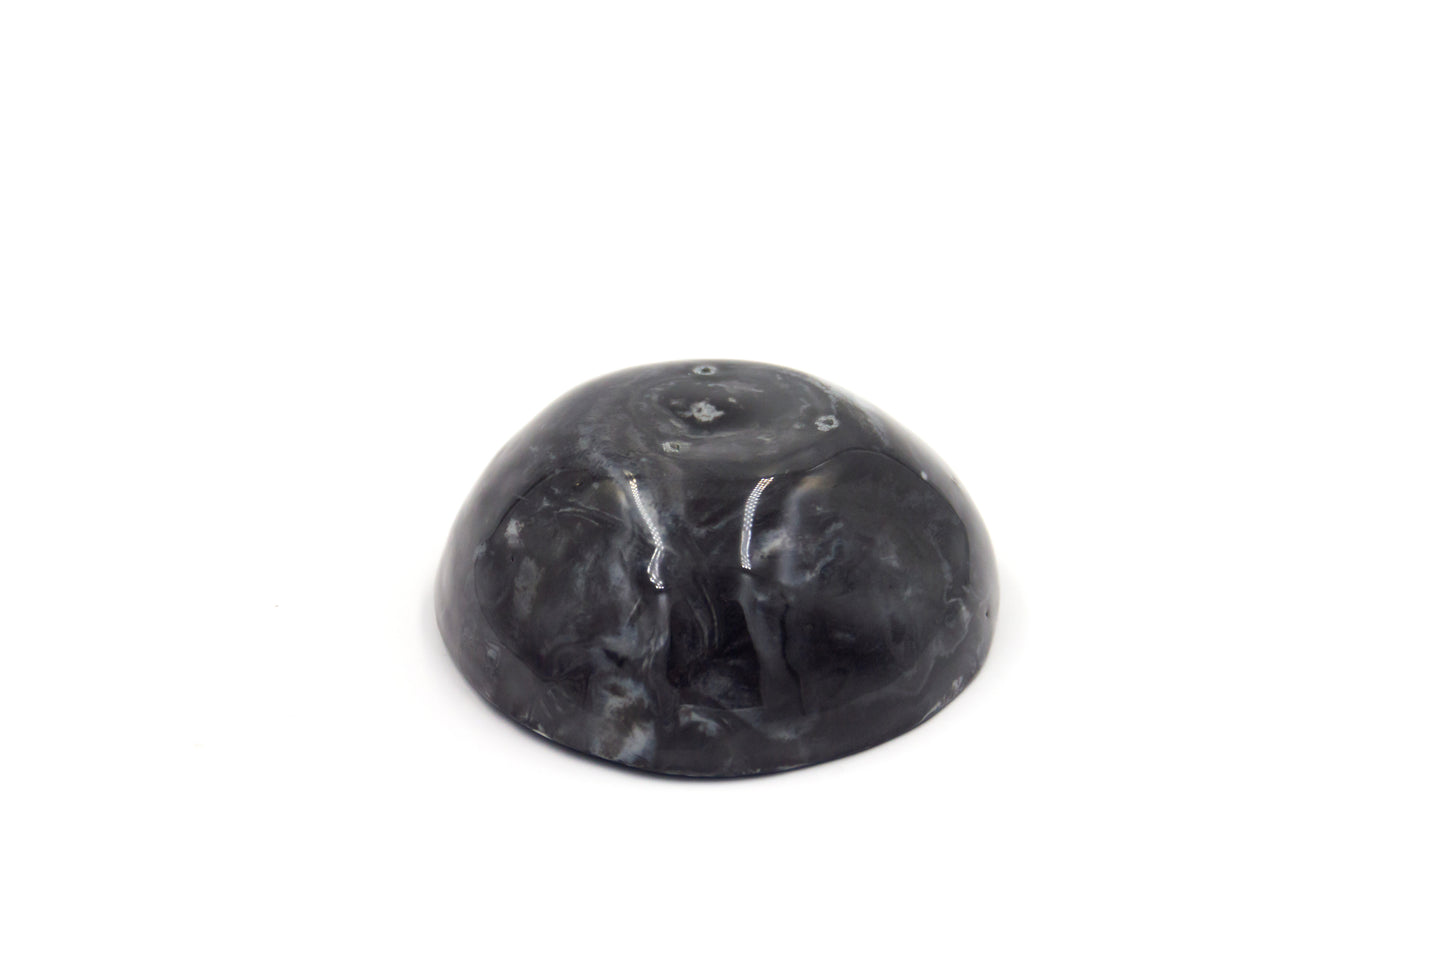 Mała miska porcelanowa w czarnym kolorze z efektem marmuru